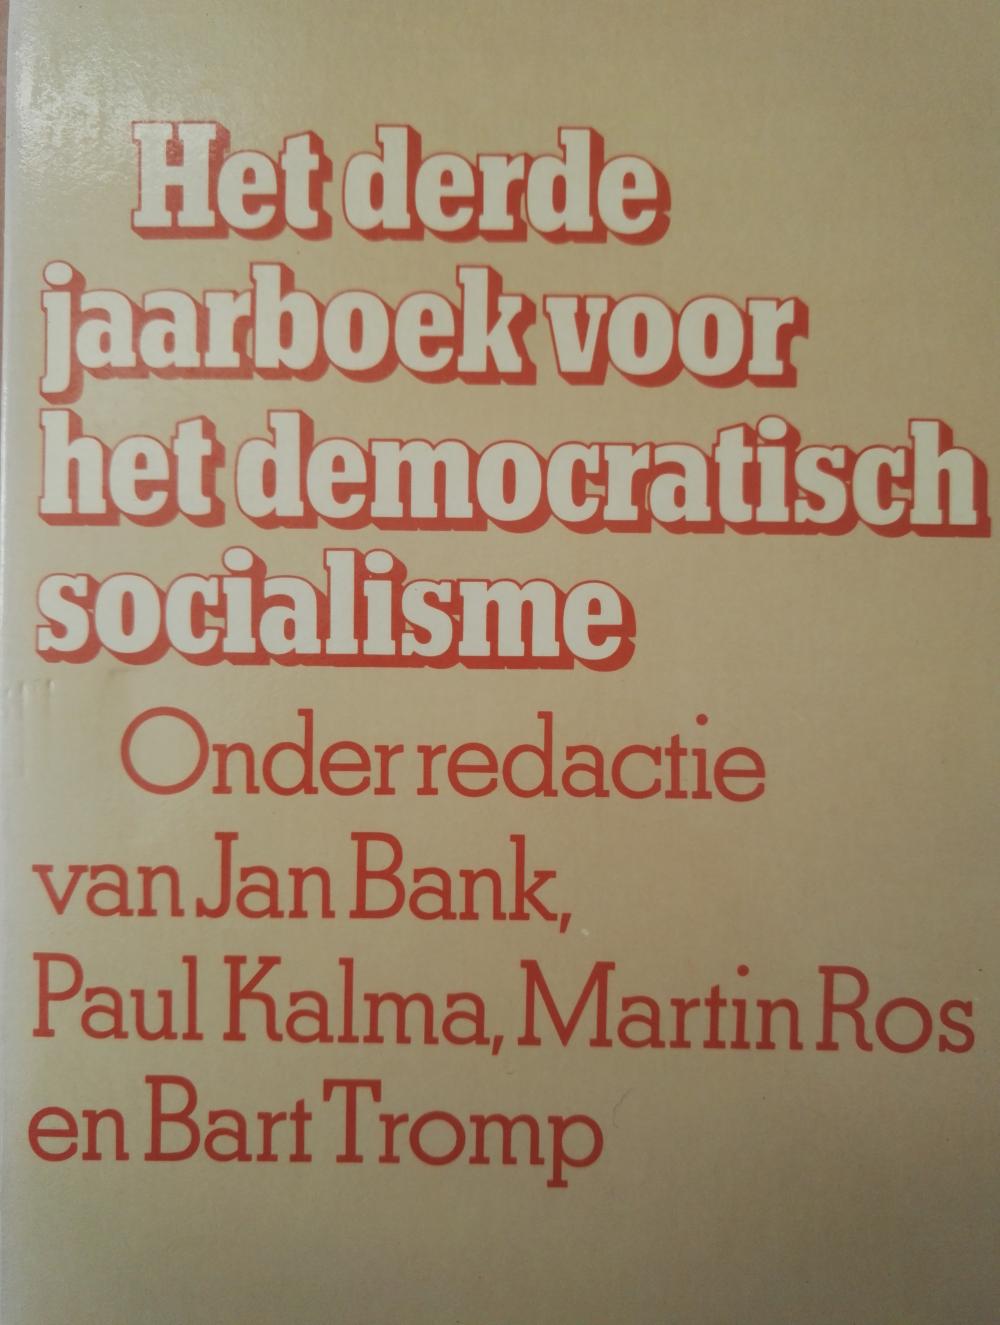 Het derde jaarboek voor het democratisch socialisme